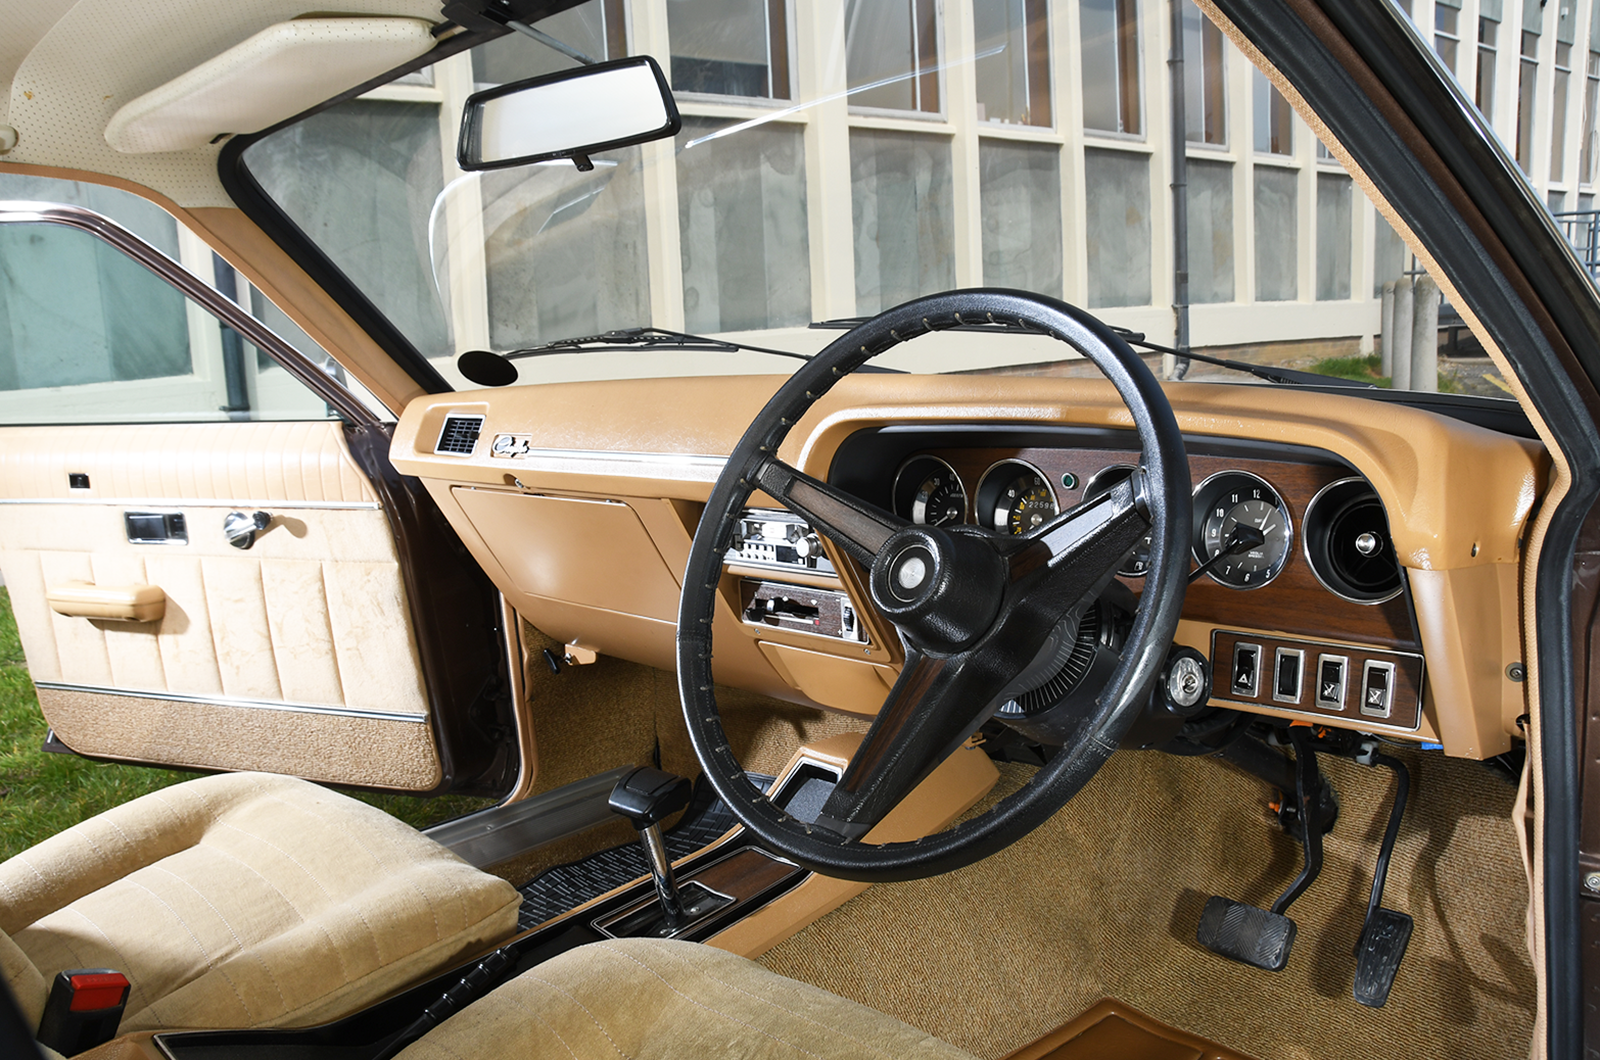 Classic & Sports Car – Guilty pleasures: Chrysler 2 Litre